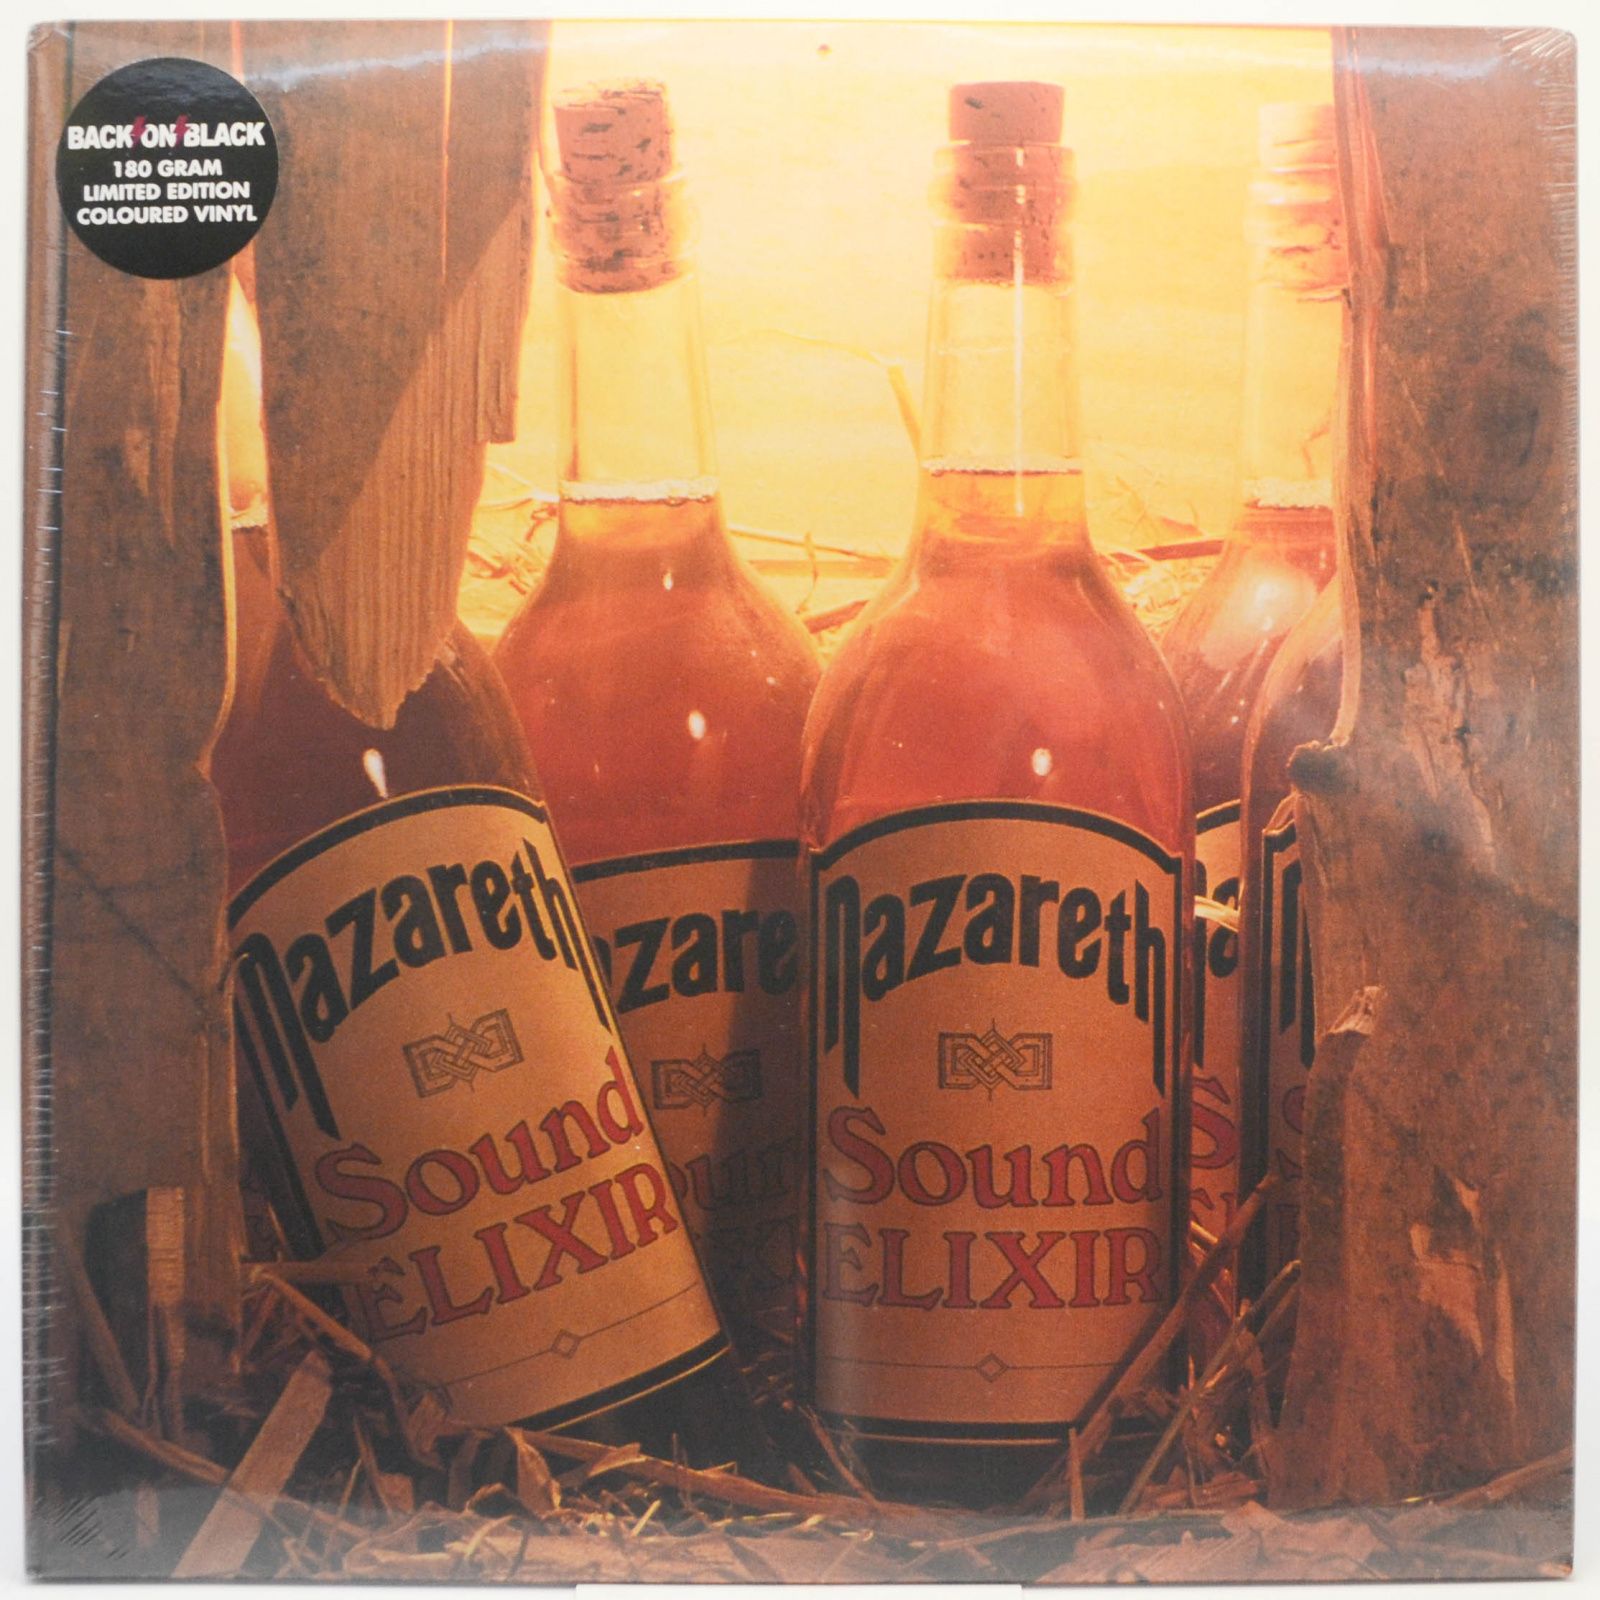 Nazareth — Sound Elixir, 2014